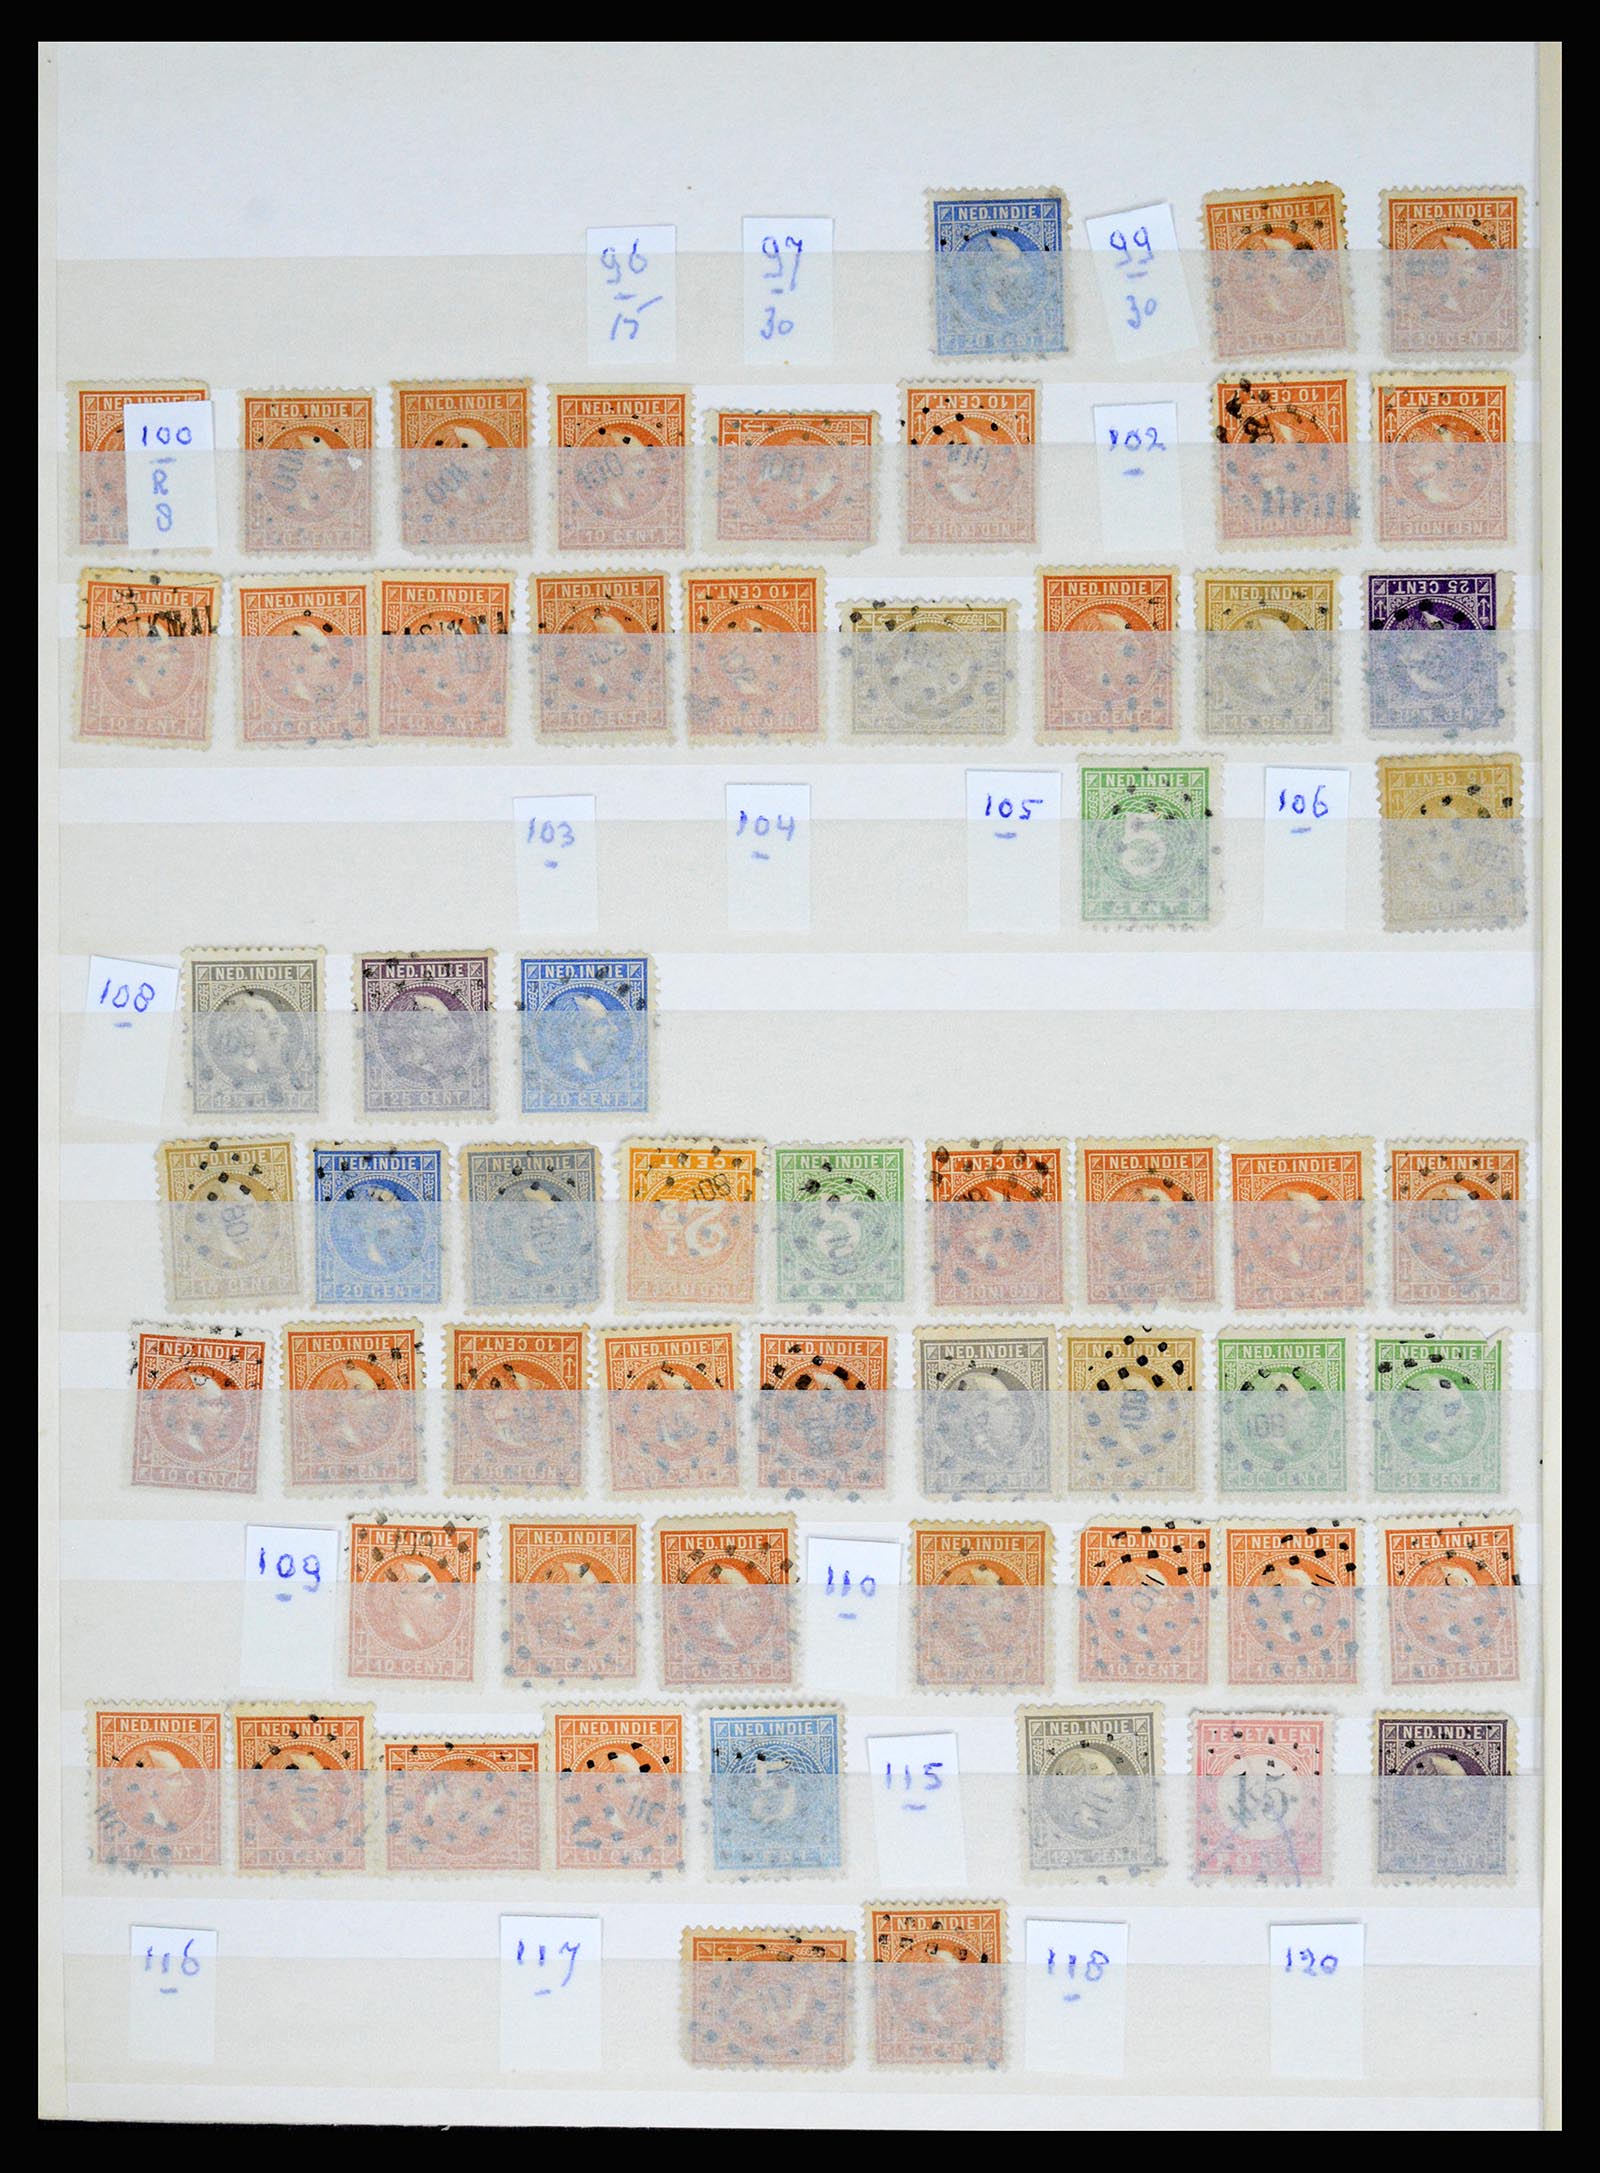 36512 016 - Stamp collection 36512 Nederlands Indië stempels 1872-1930.